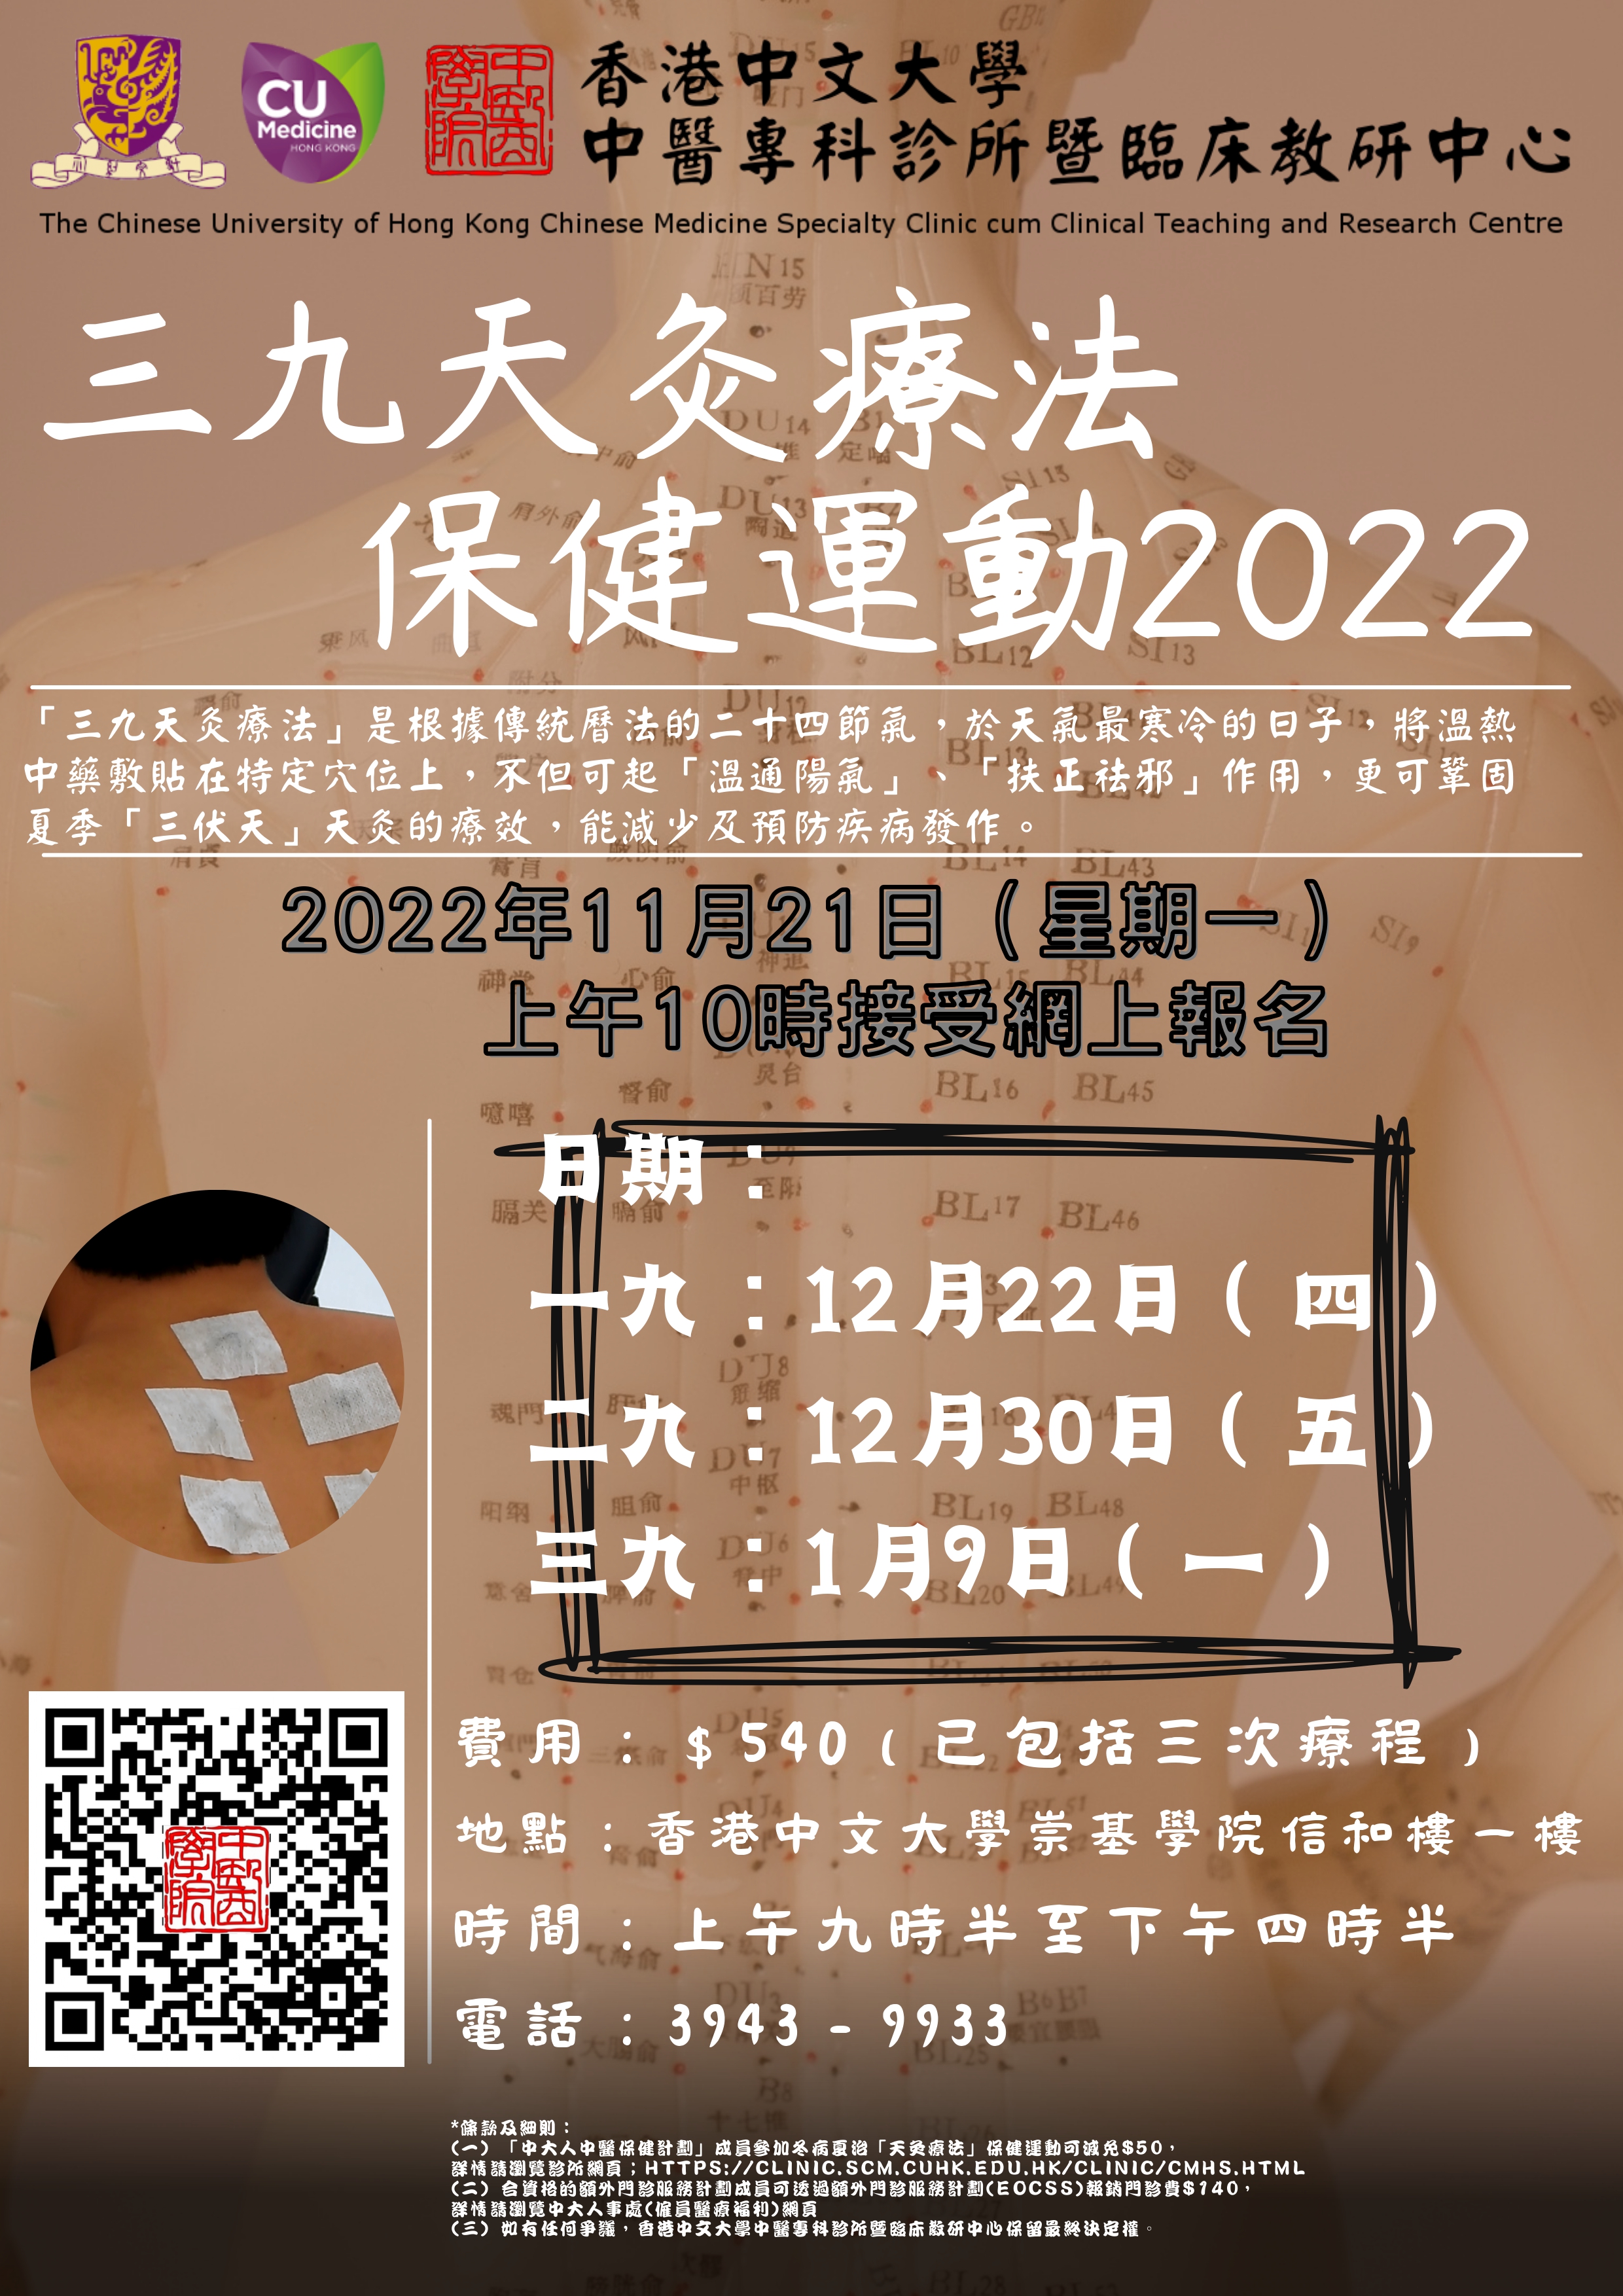 2022 WNM Poster v2